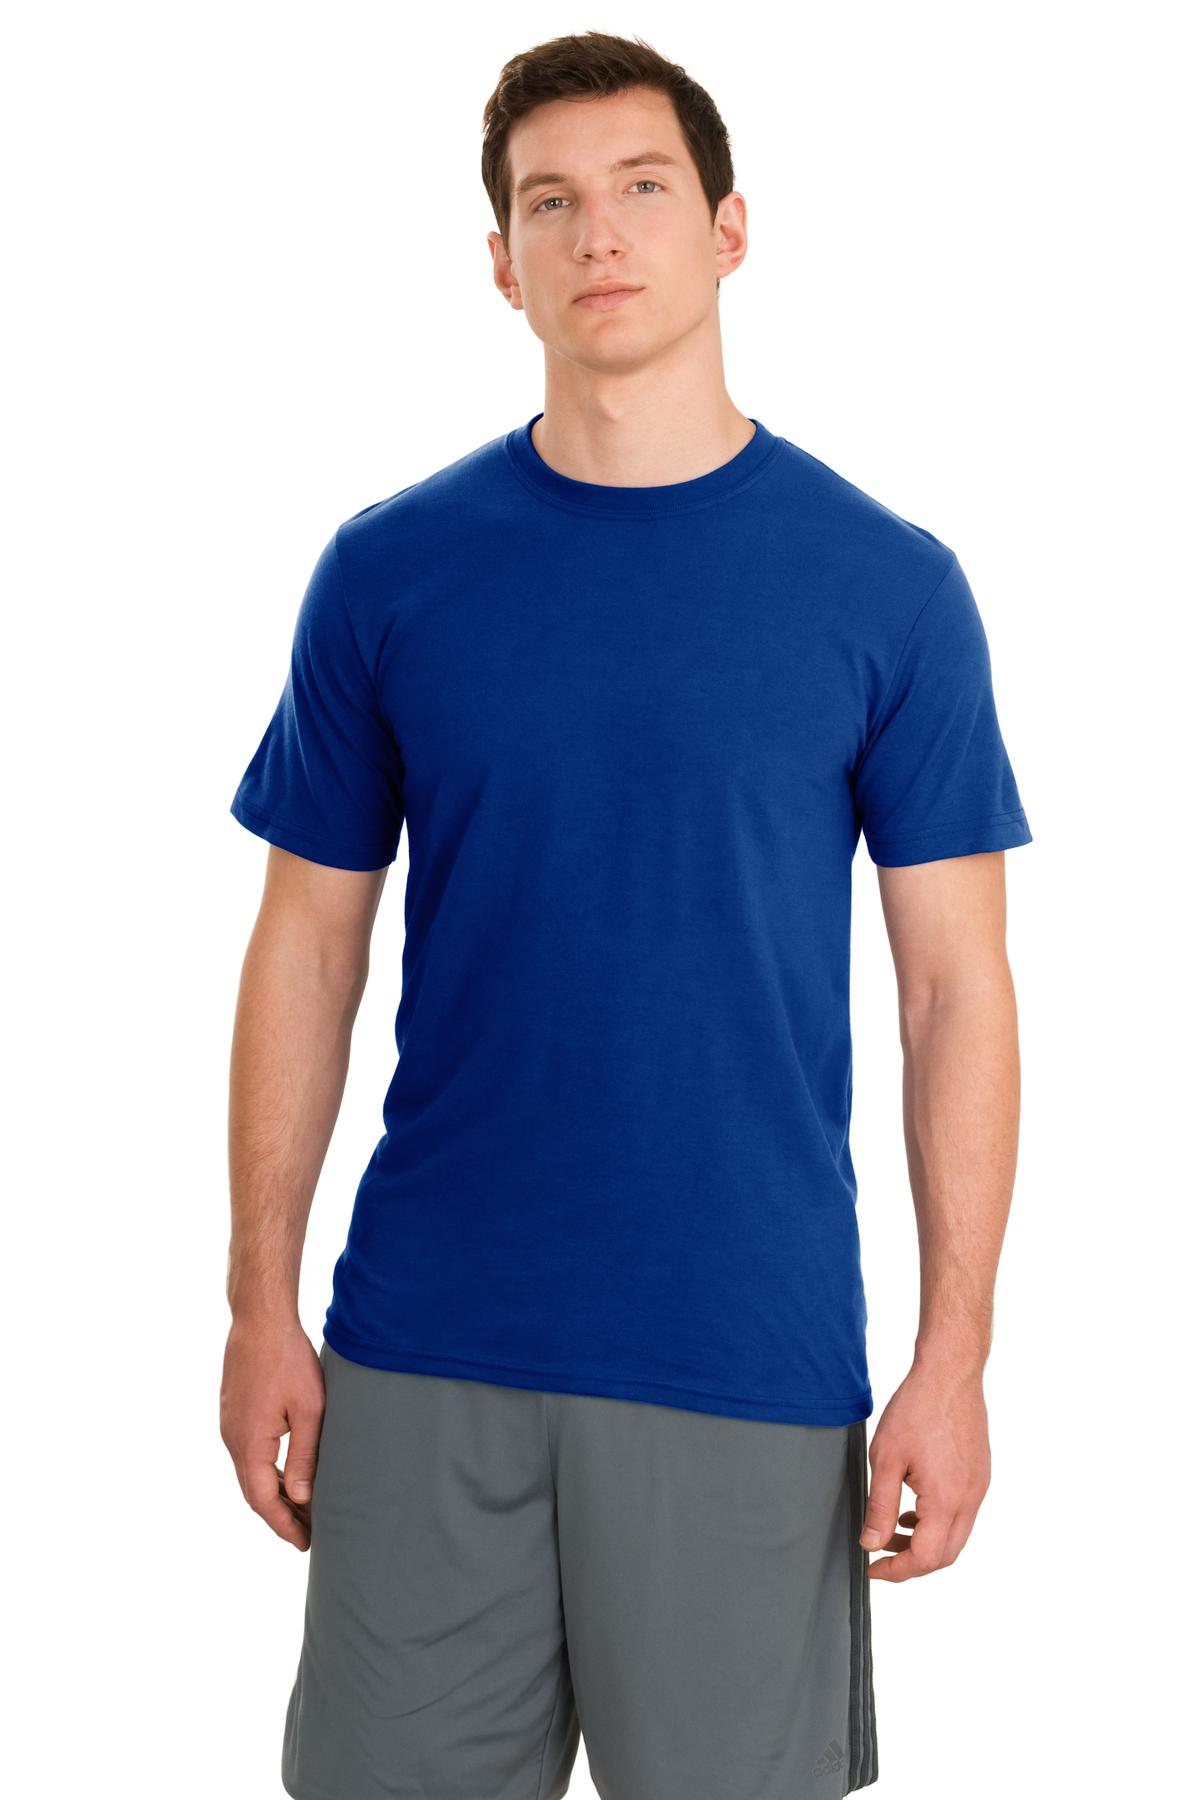 JERZEES  21M - Sport 100% Polyester T-Shirt